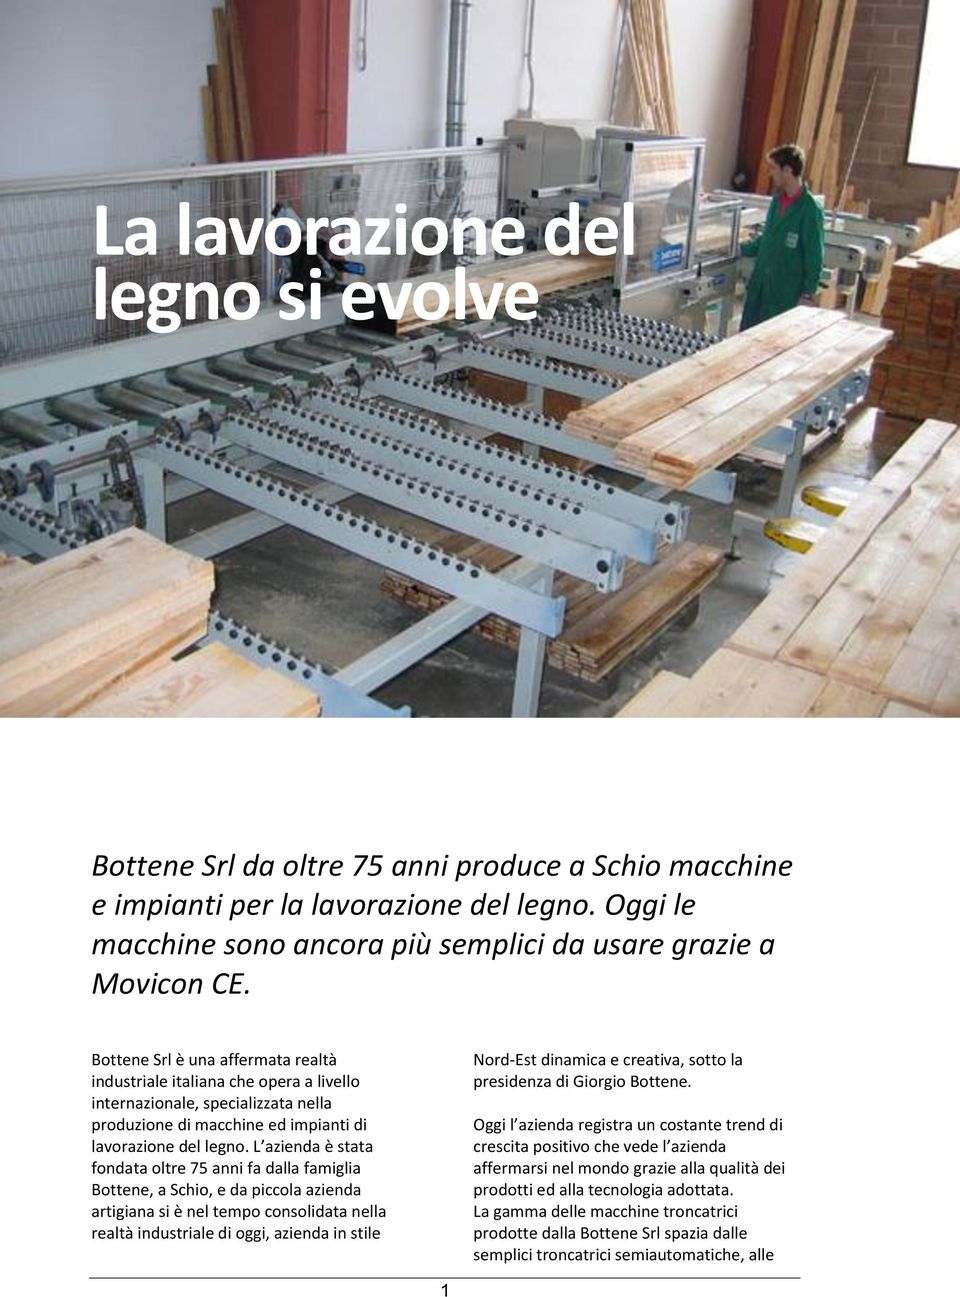 Bottene Srl è una affermata realtà industriale italiana che opera a livello internazionale, specializzata nella produzione di macchine ed impianti di lavorazione del legno.